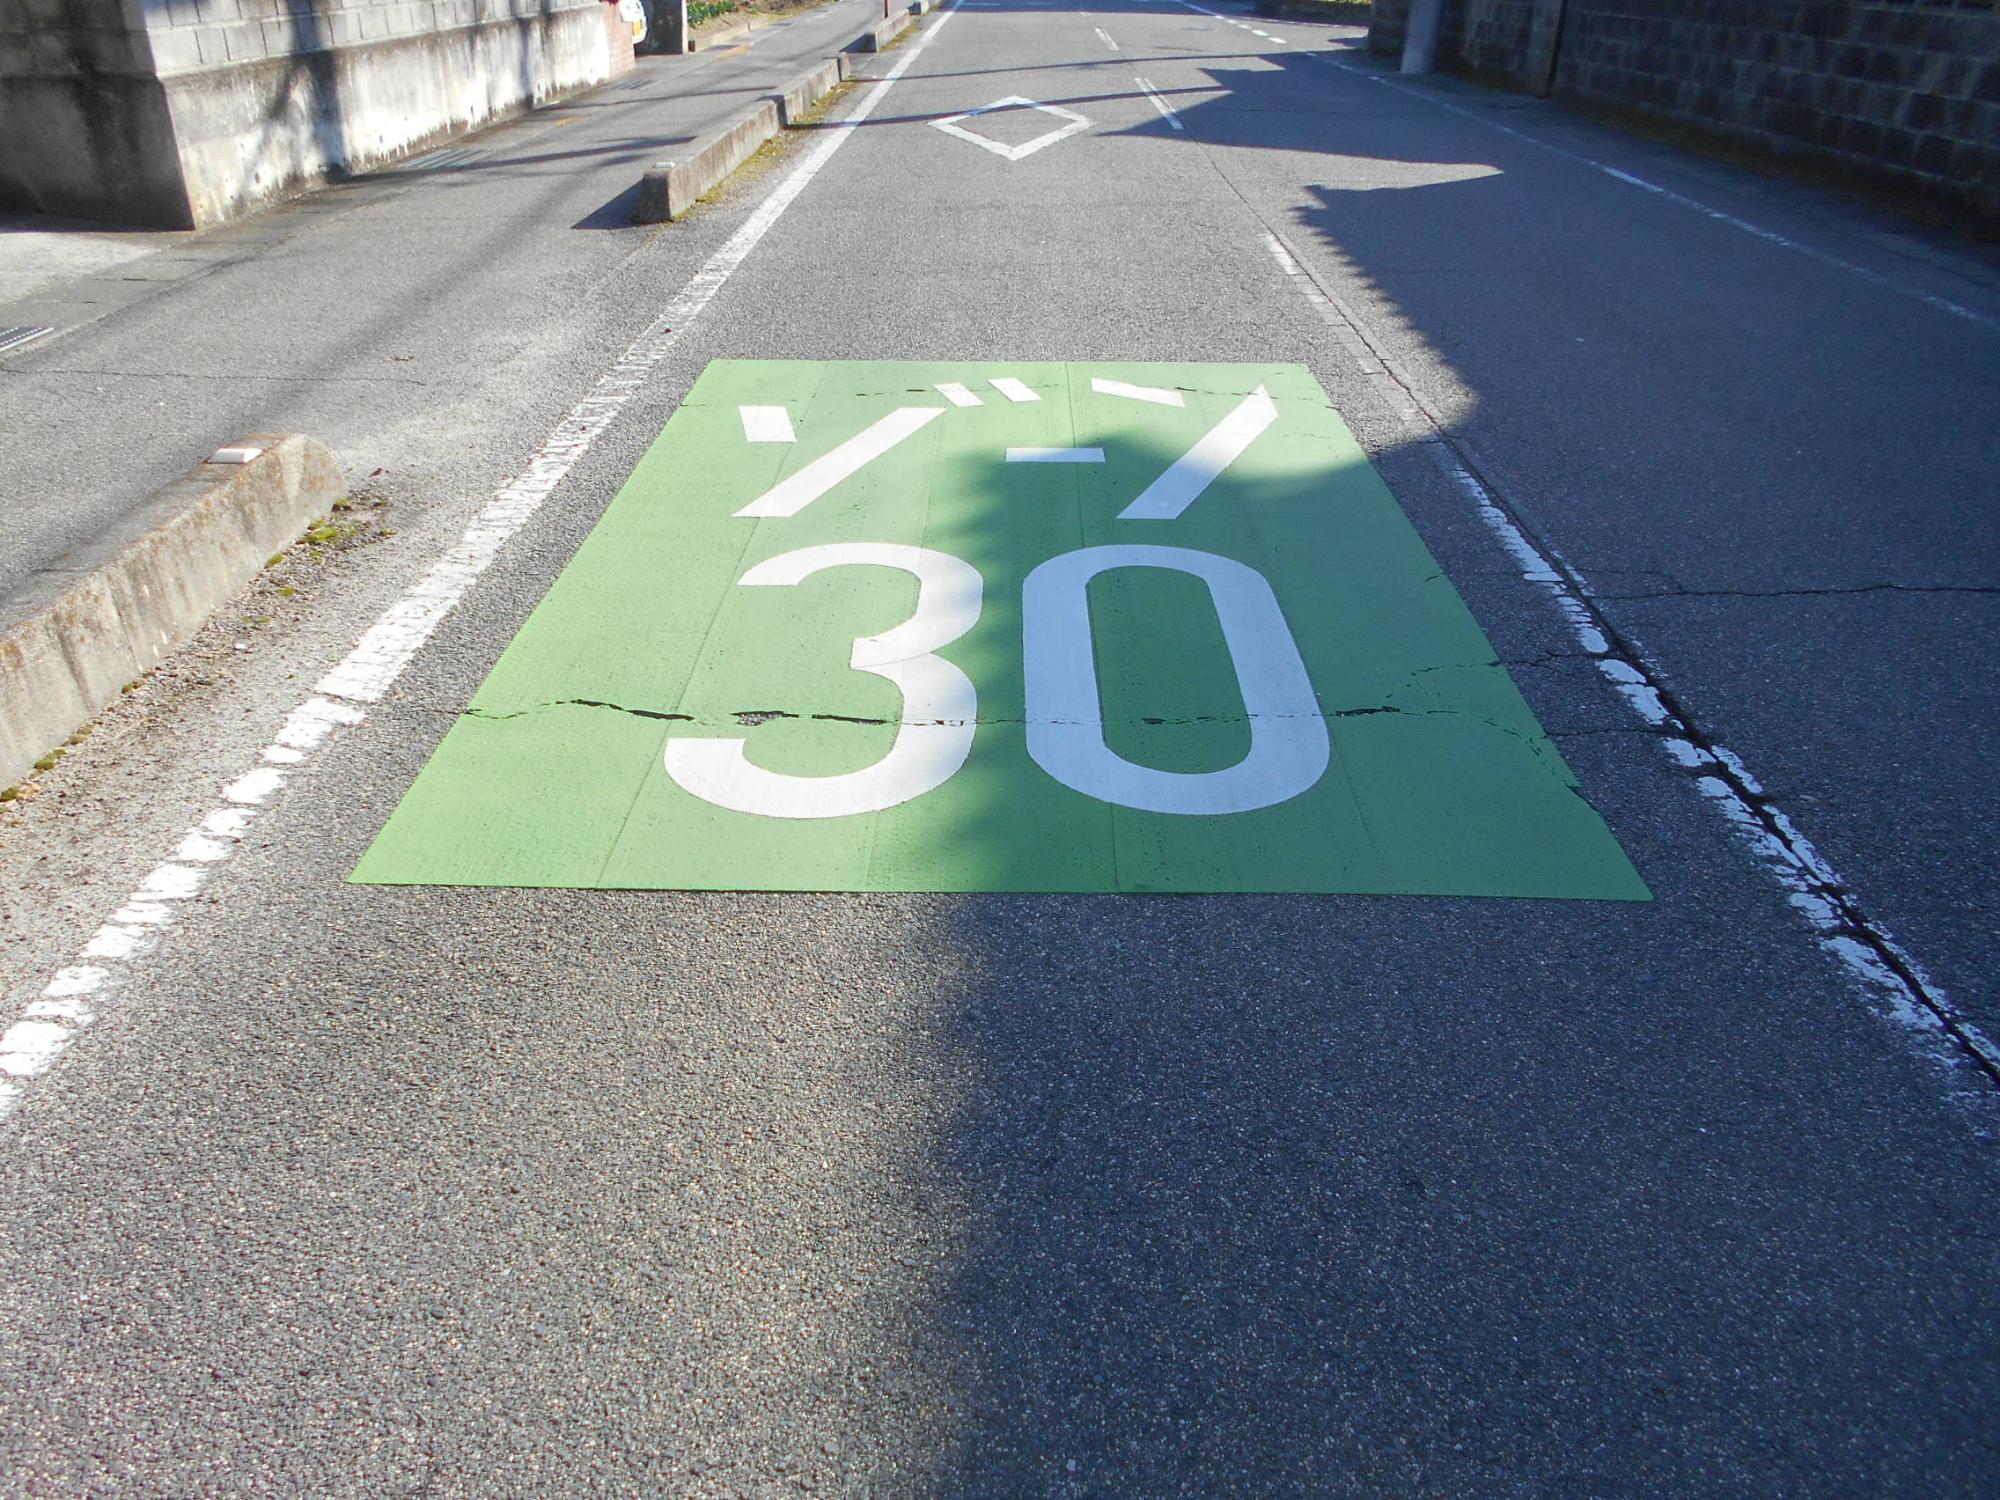 「ゾーン30」を示す路面標示